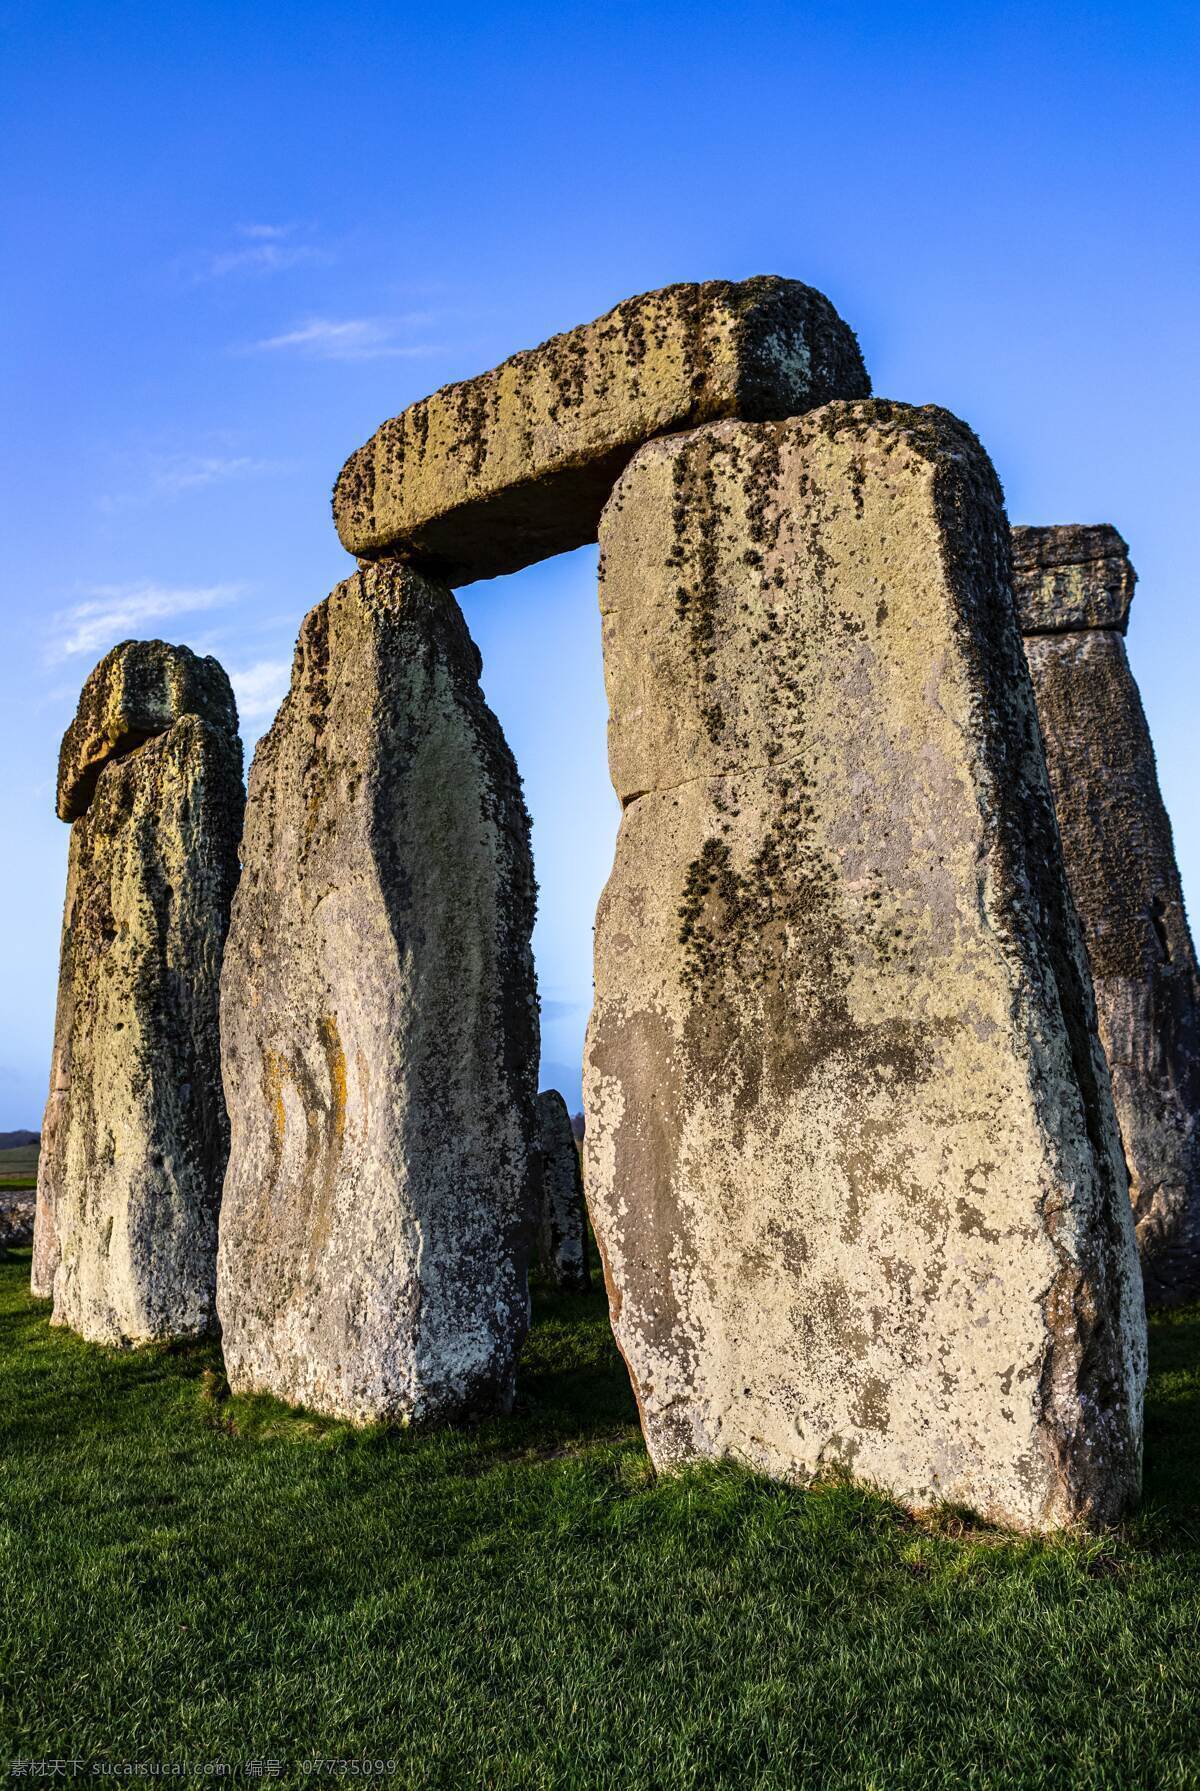 巨石阵图片 英国 英国巨石阵 巨石阵 石头 旅游 景观 世界风景 世界景观 国外美丽风光